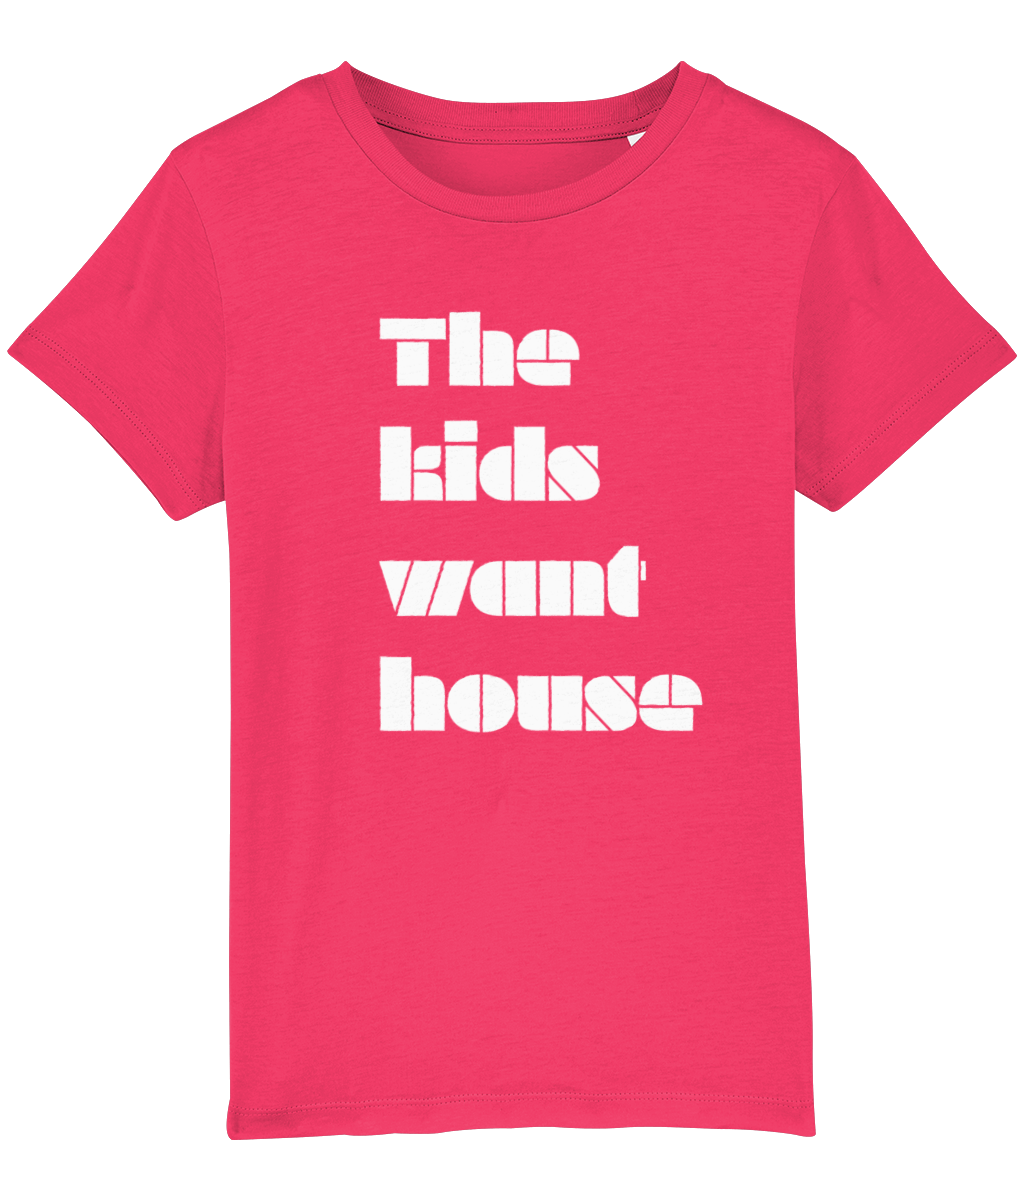 The Kids T-shirt